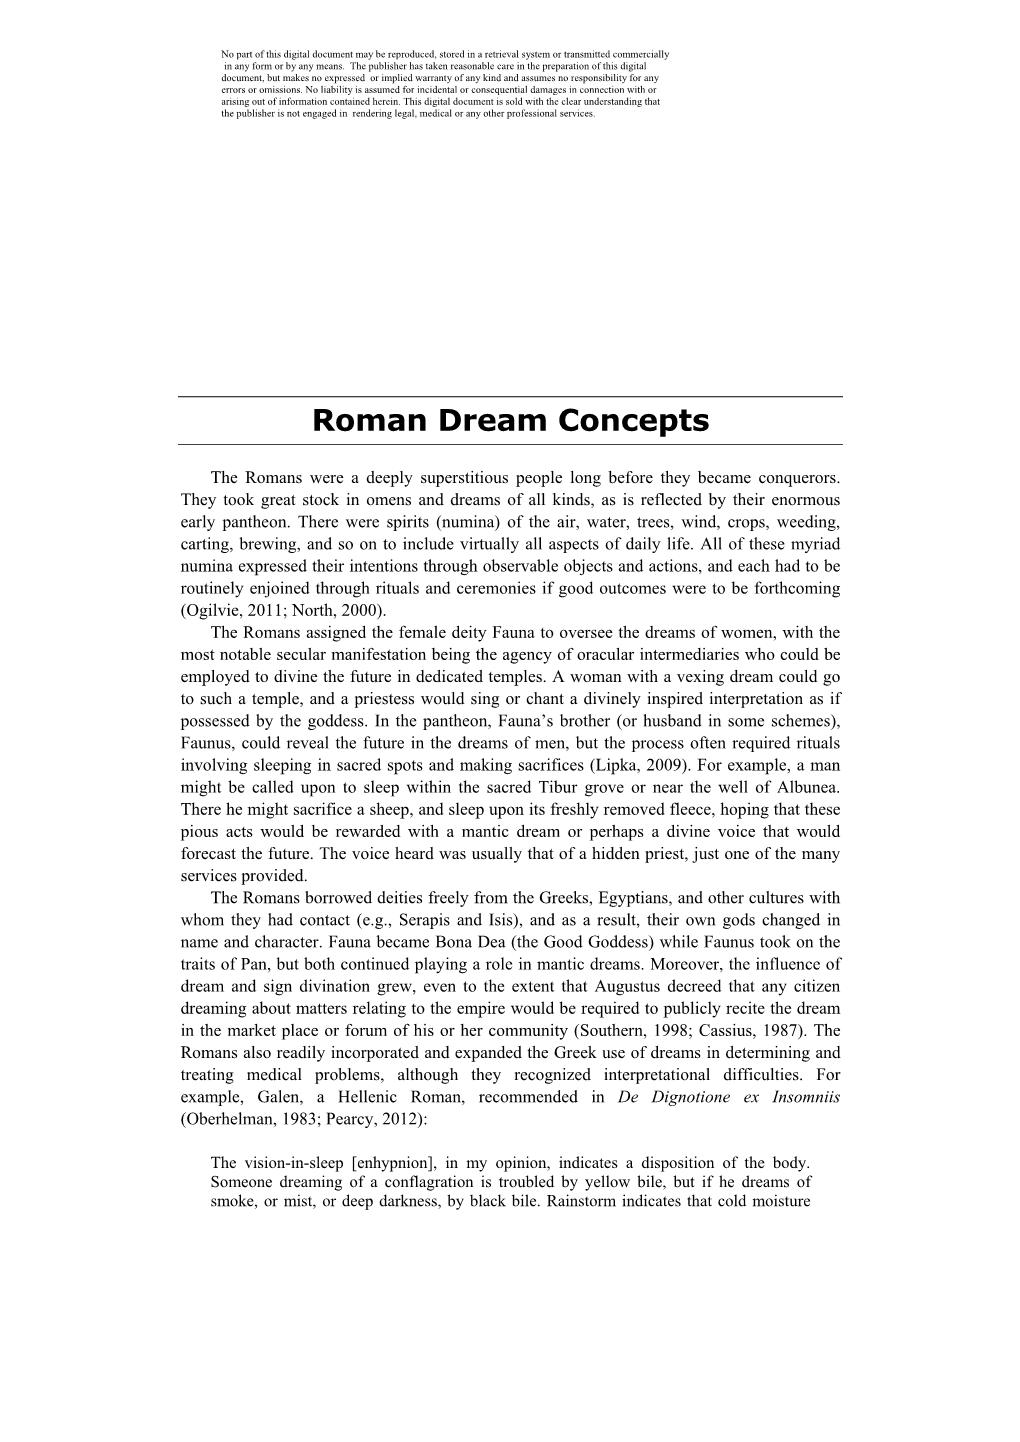 Roman Dream Concepts